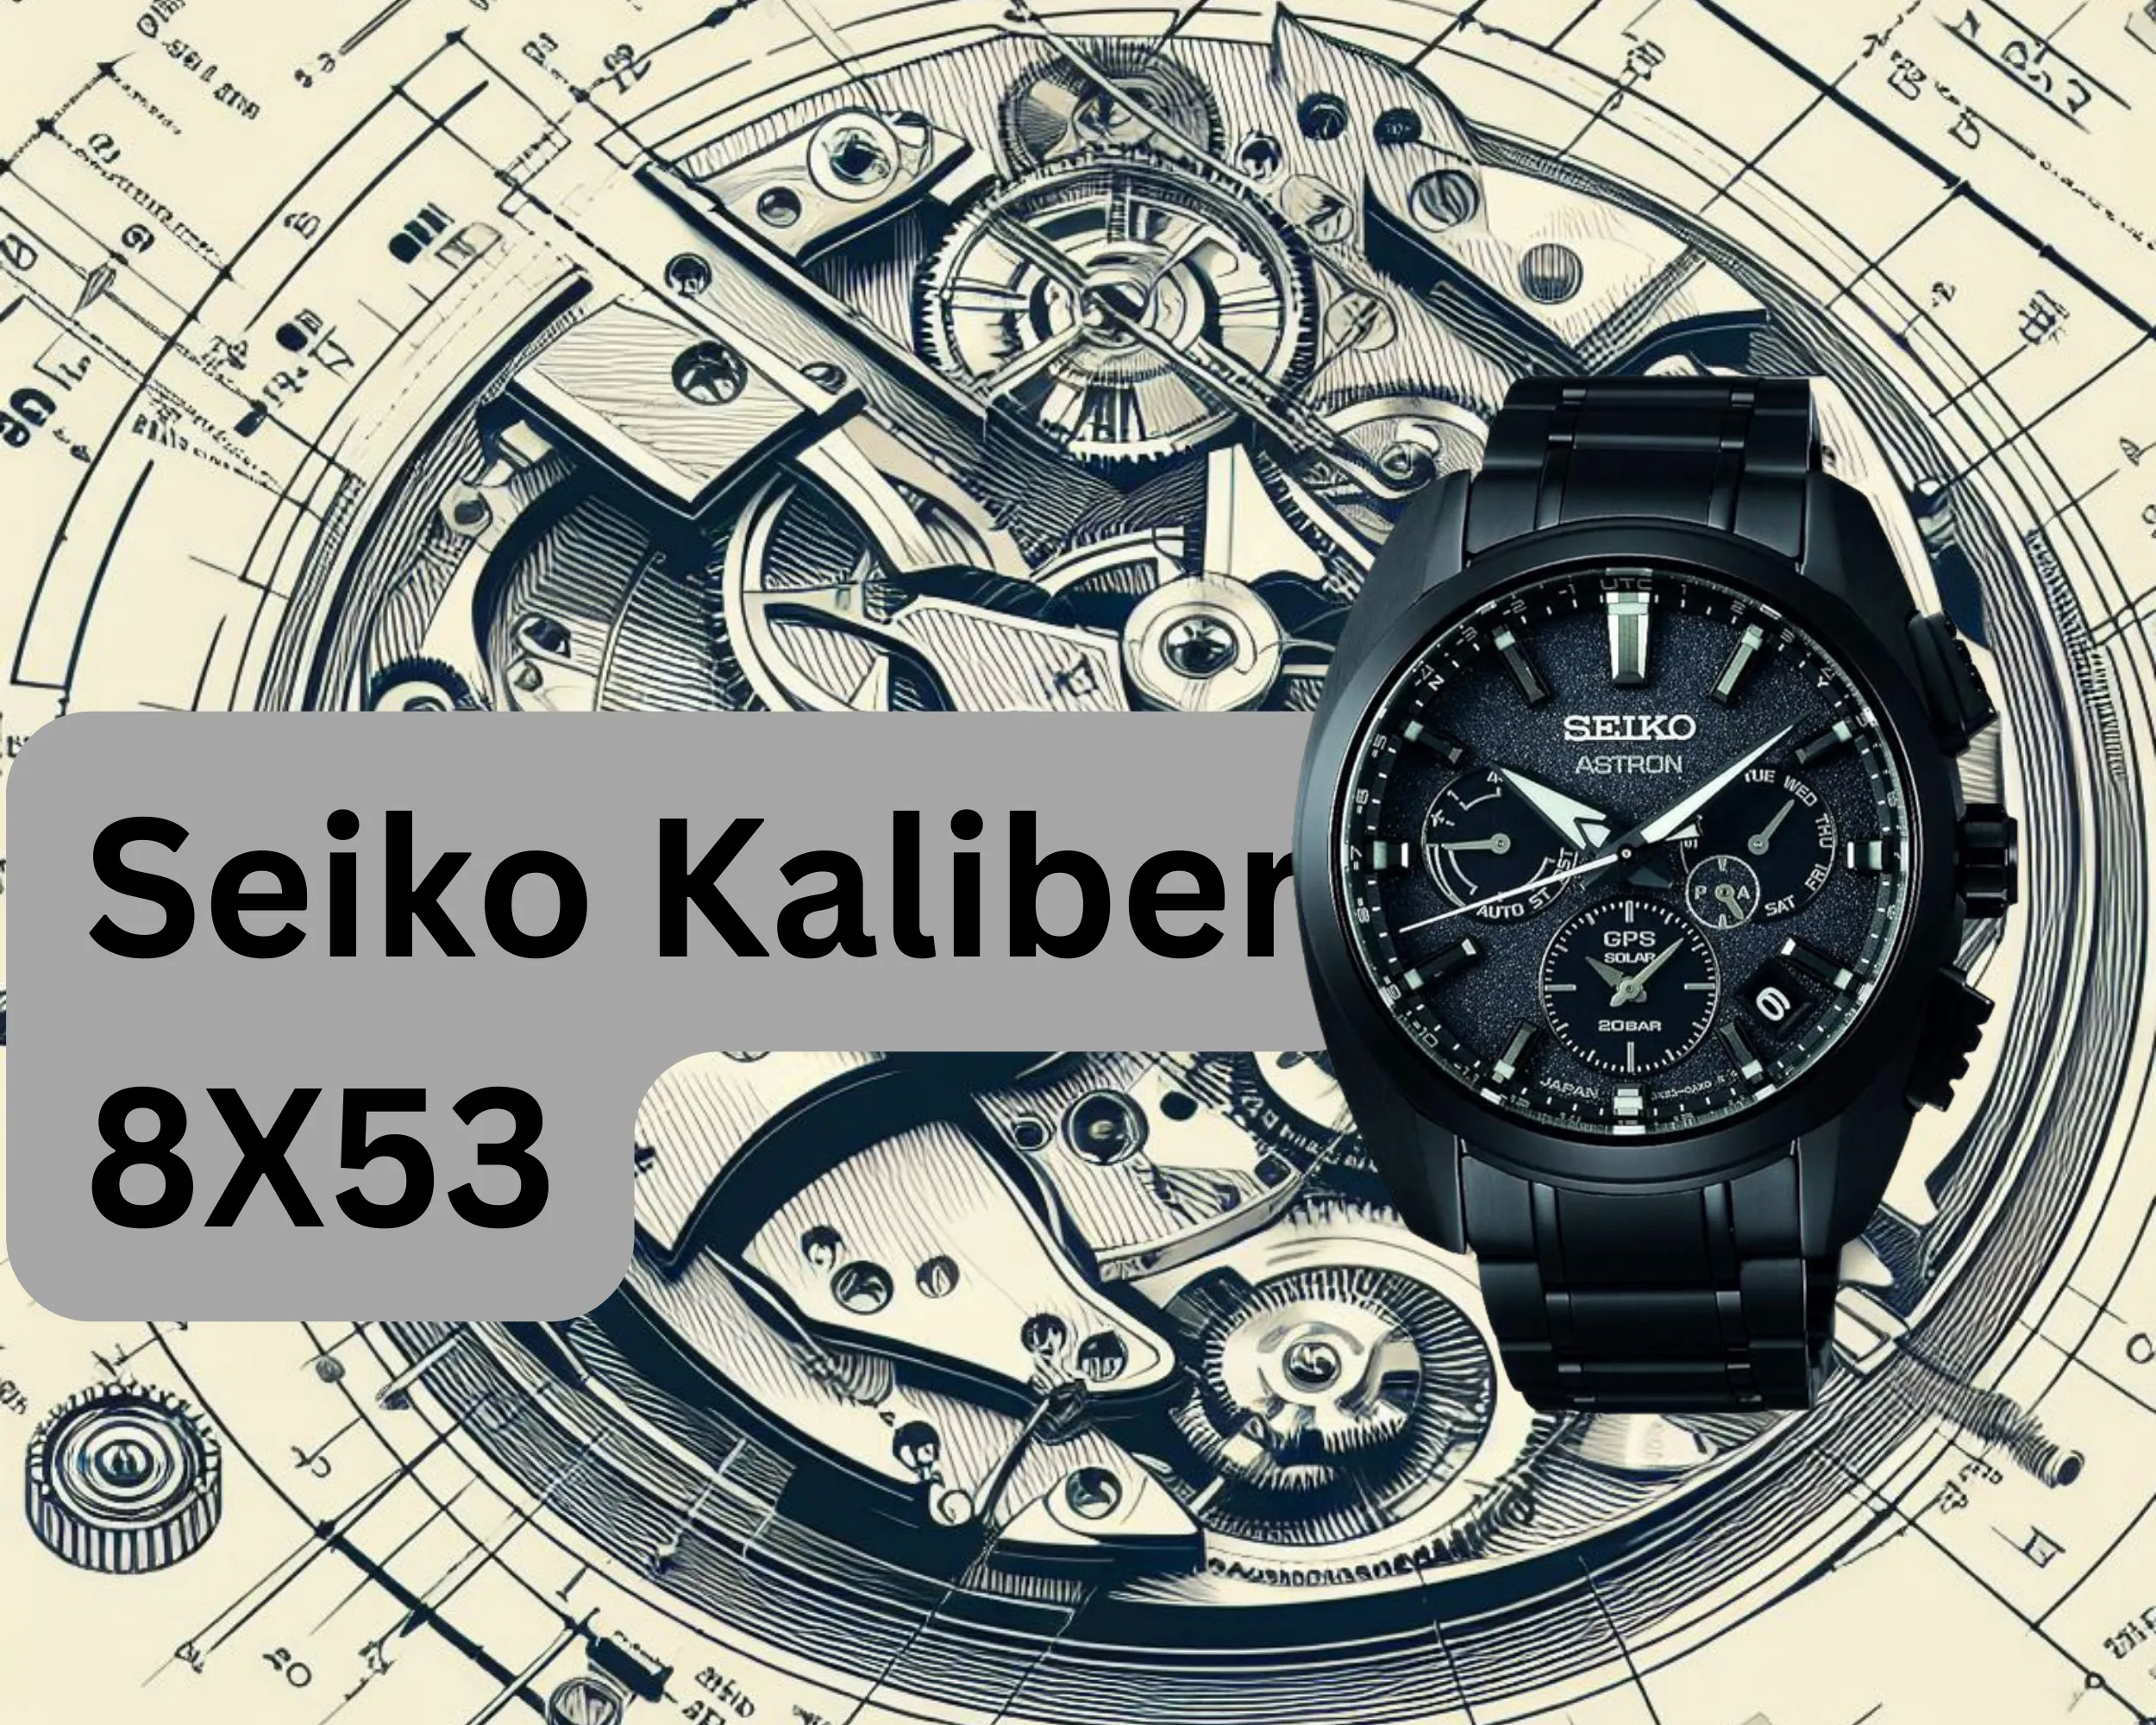 Seiko Kaliber 8X53